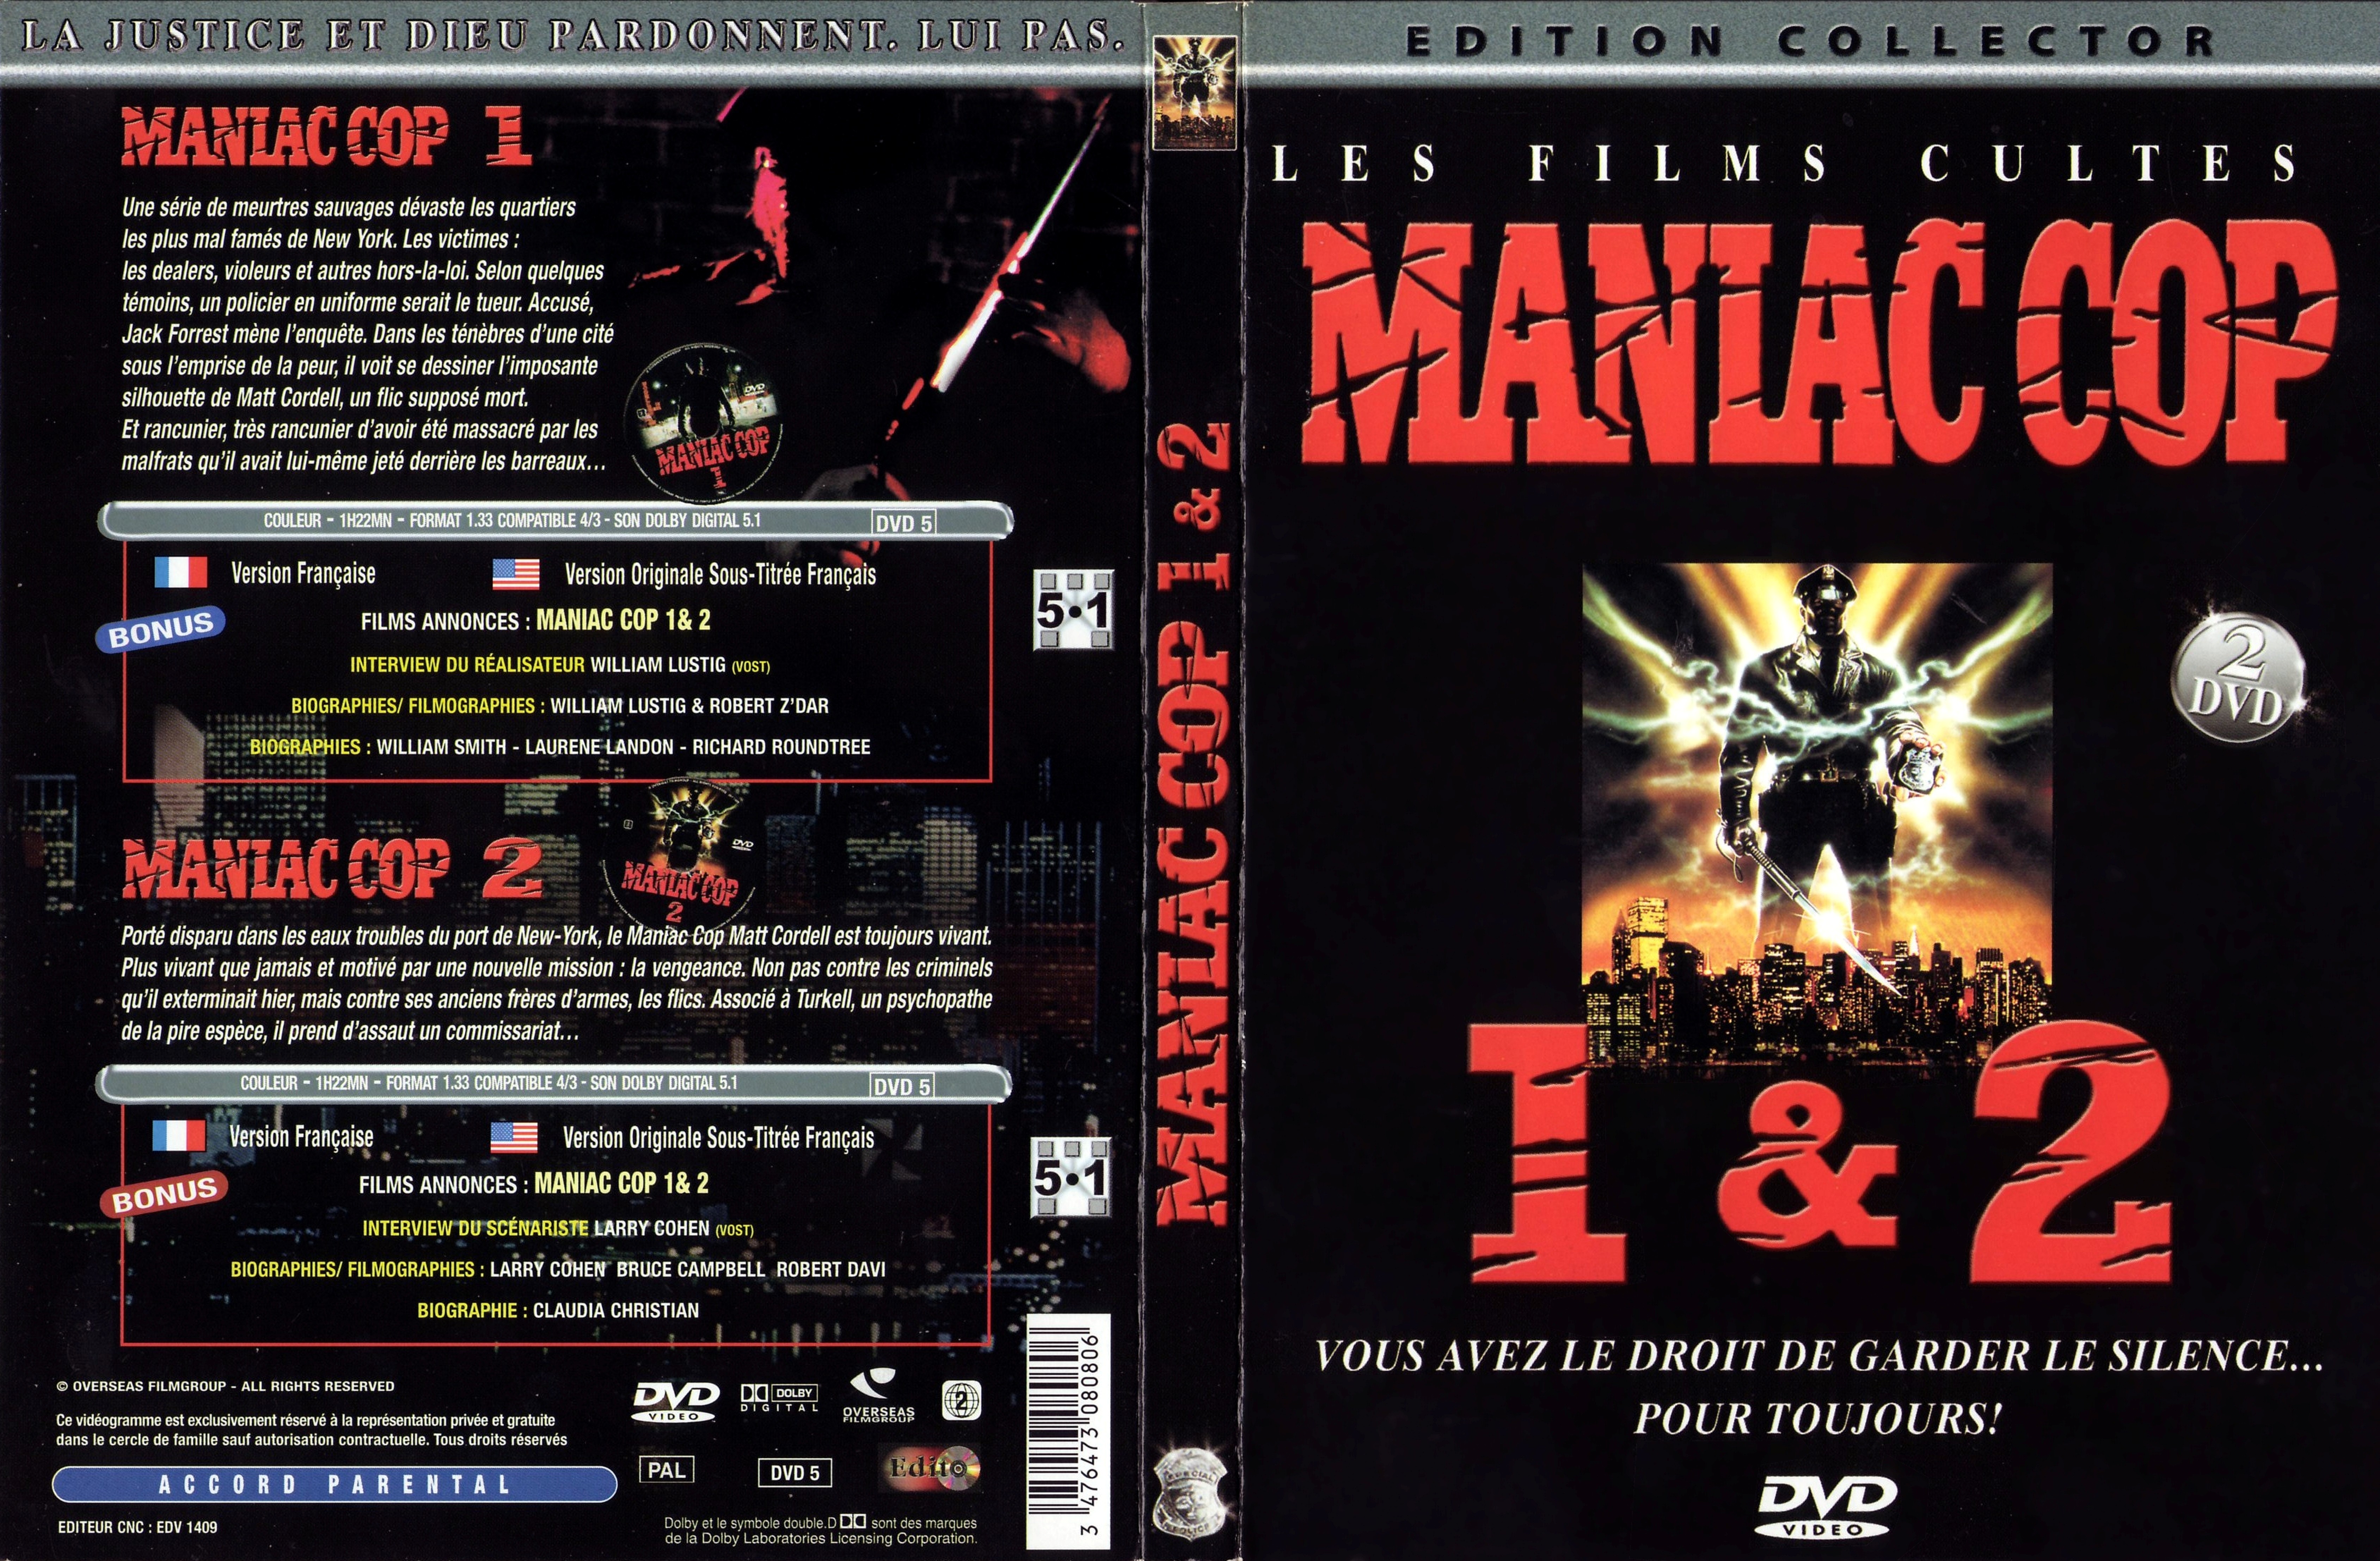 Jaquette DVD Maniac cop 1 et 2 v2